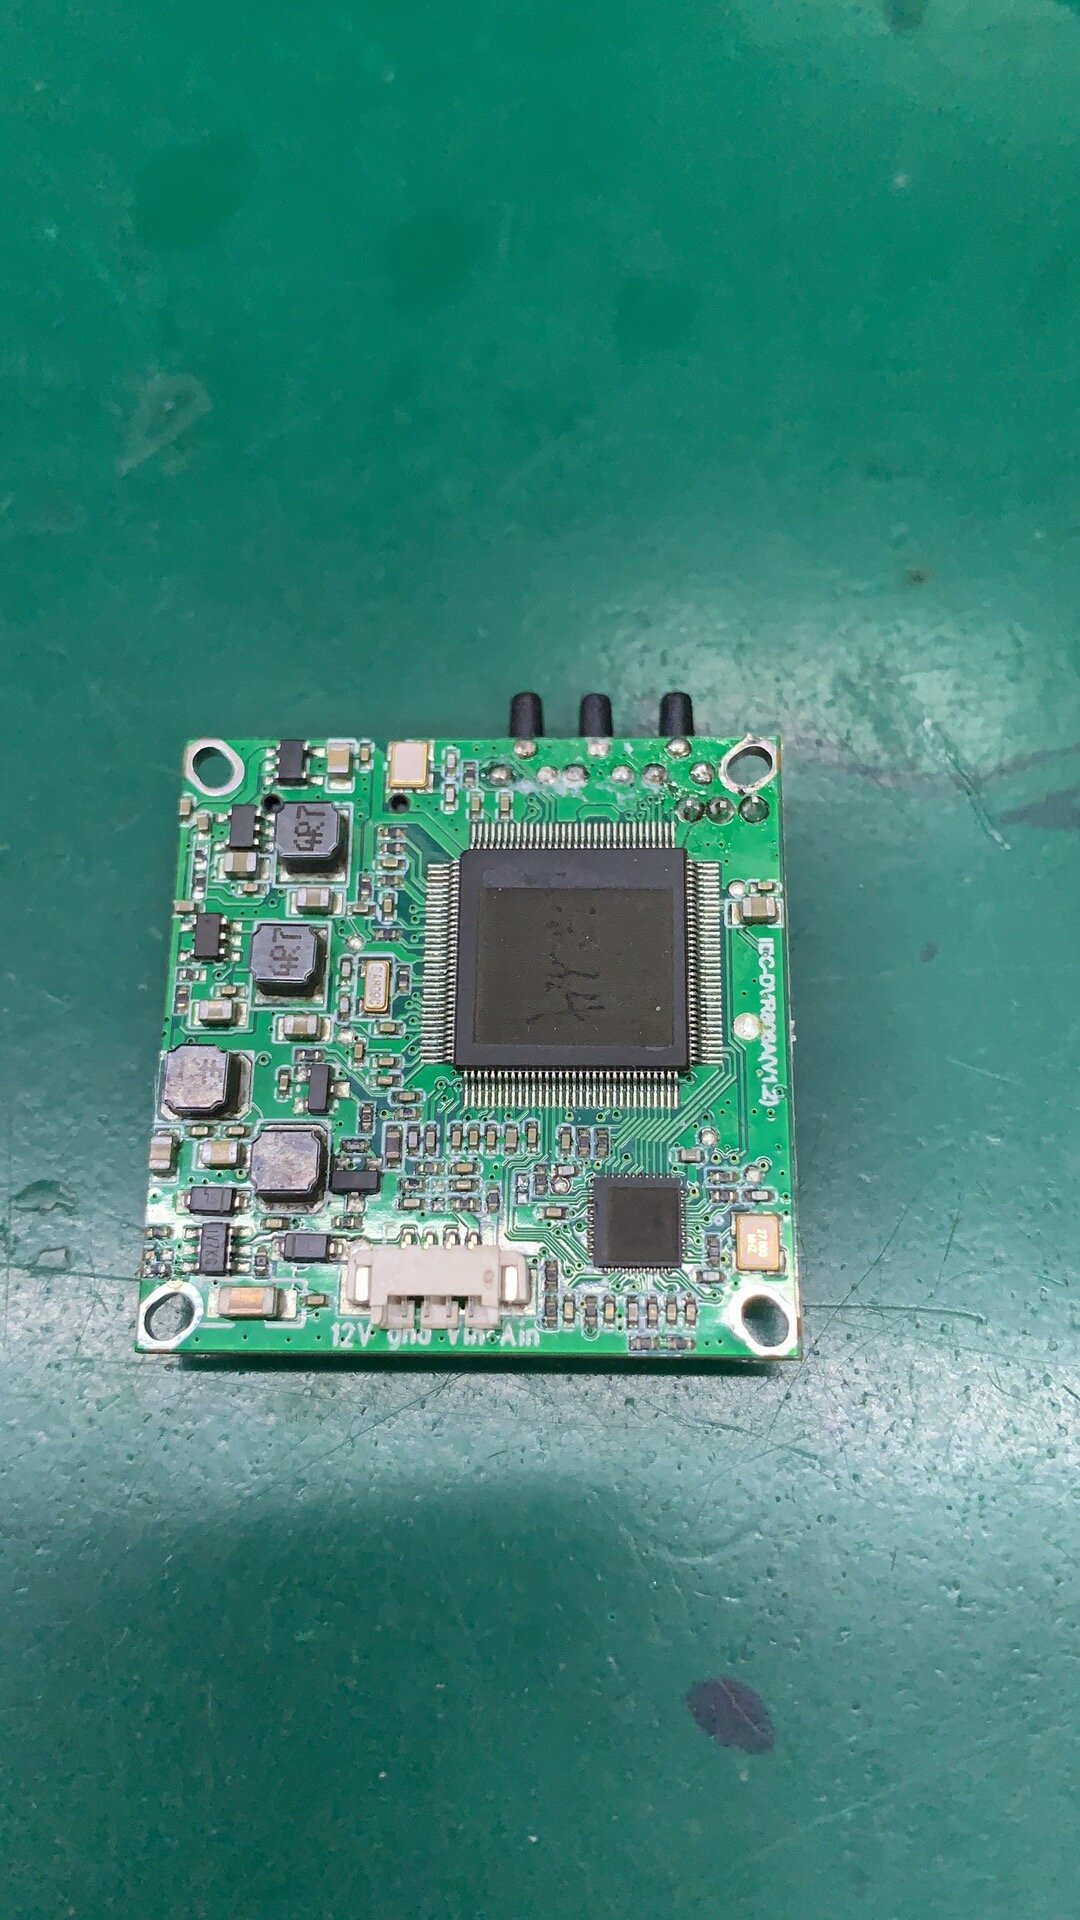 

IDC-DVR816 AHD 1080P Mini Recorder Board DVR Camera Module Support 256G SD Card for FPV RC Drone